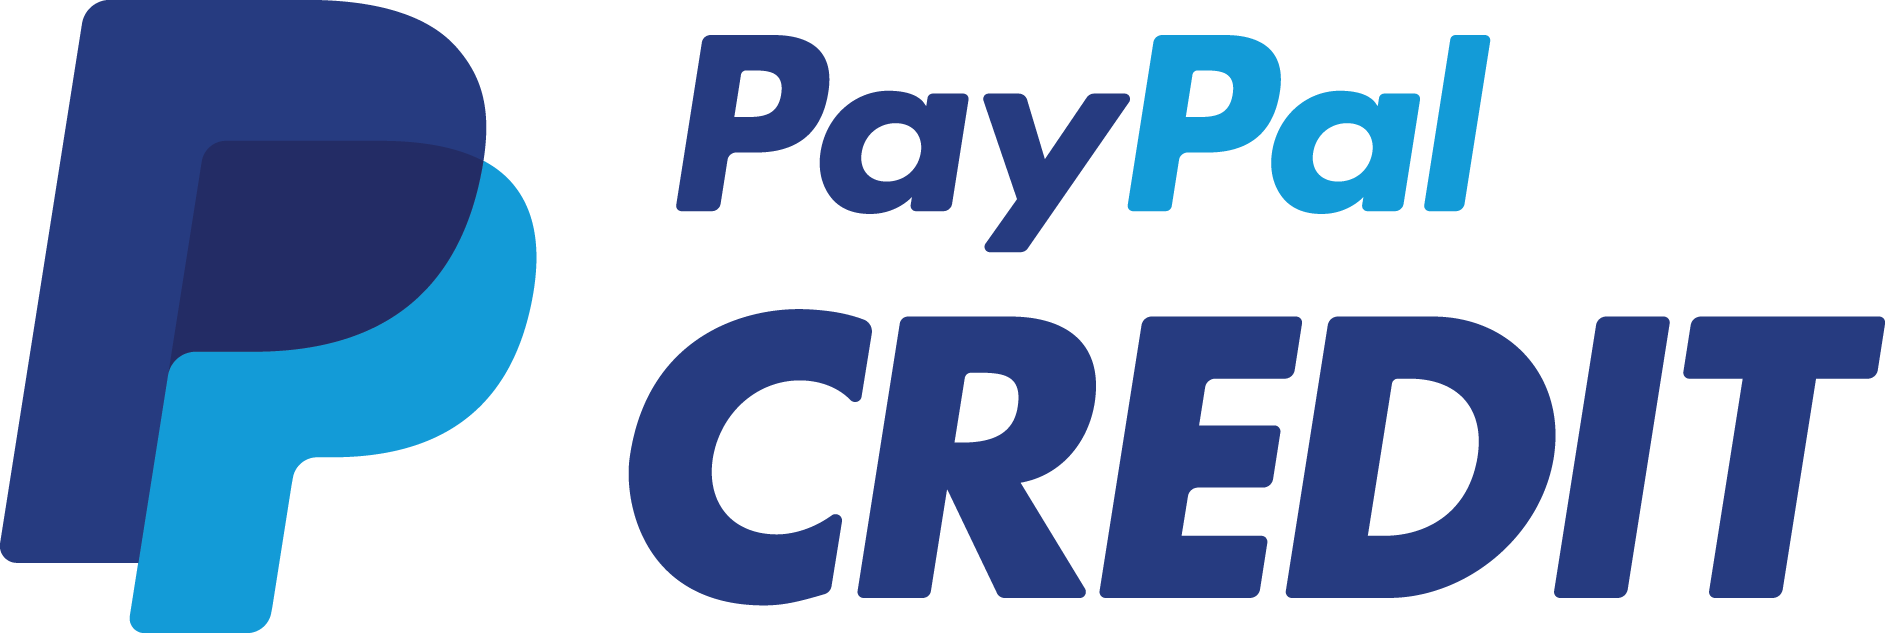 paypal-creadit-logo